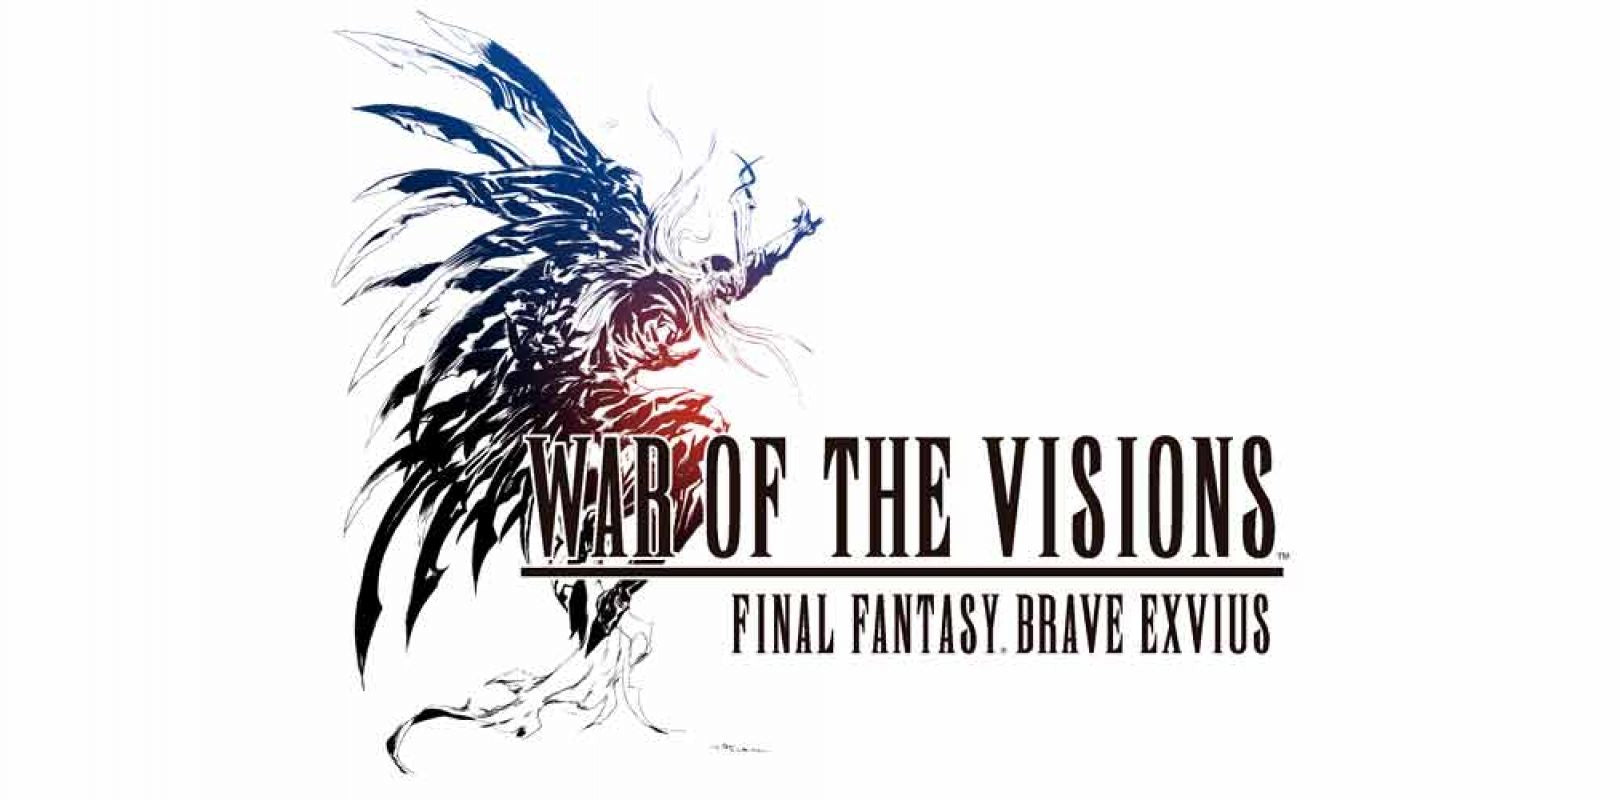 Un evento de colaboración con Final Fantasy IV llega a WAR OF THE VISIONS FINAL FANTASY BRAVE EXVIUS